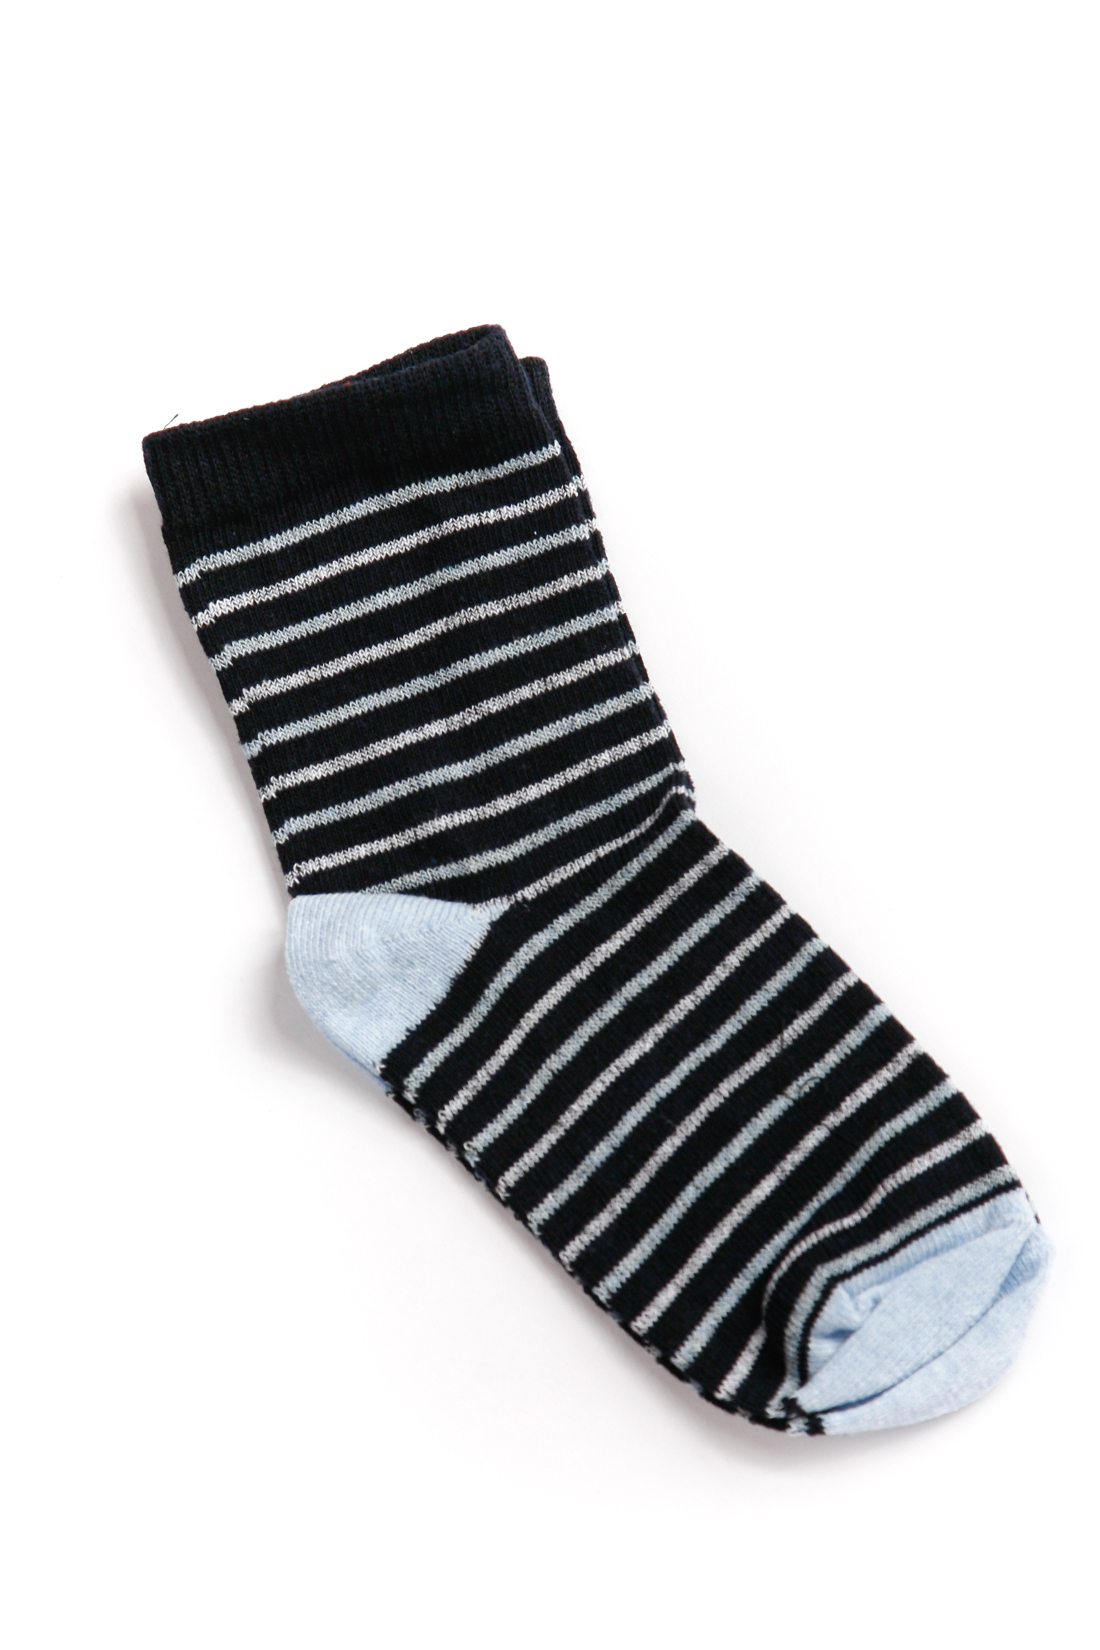 Носки для мальчика (арт. baon BK899006), размер 26/28, цвет синий